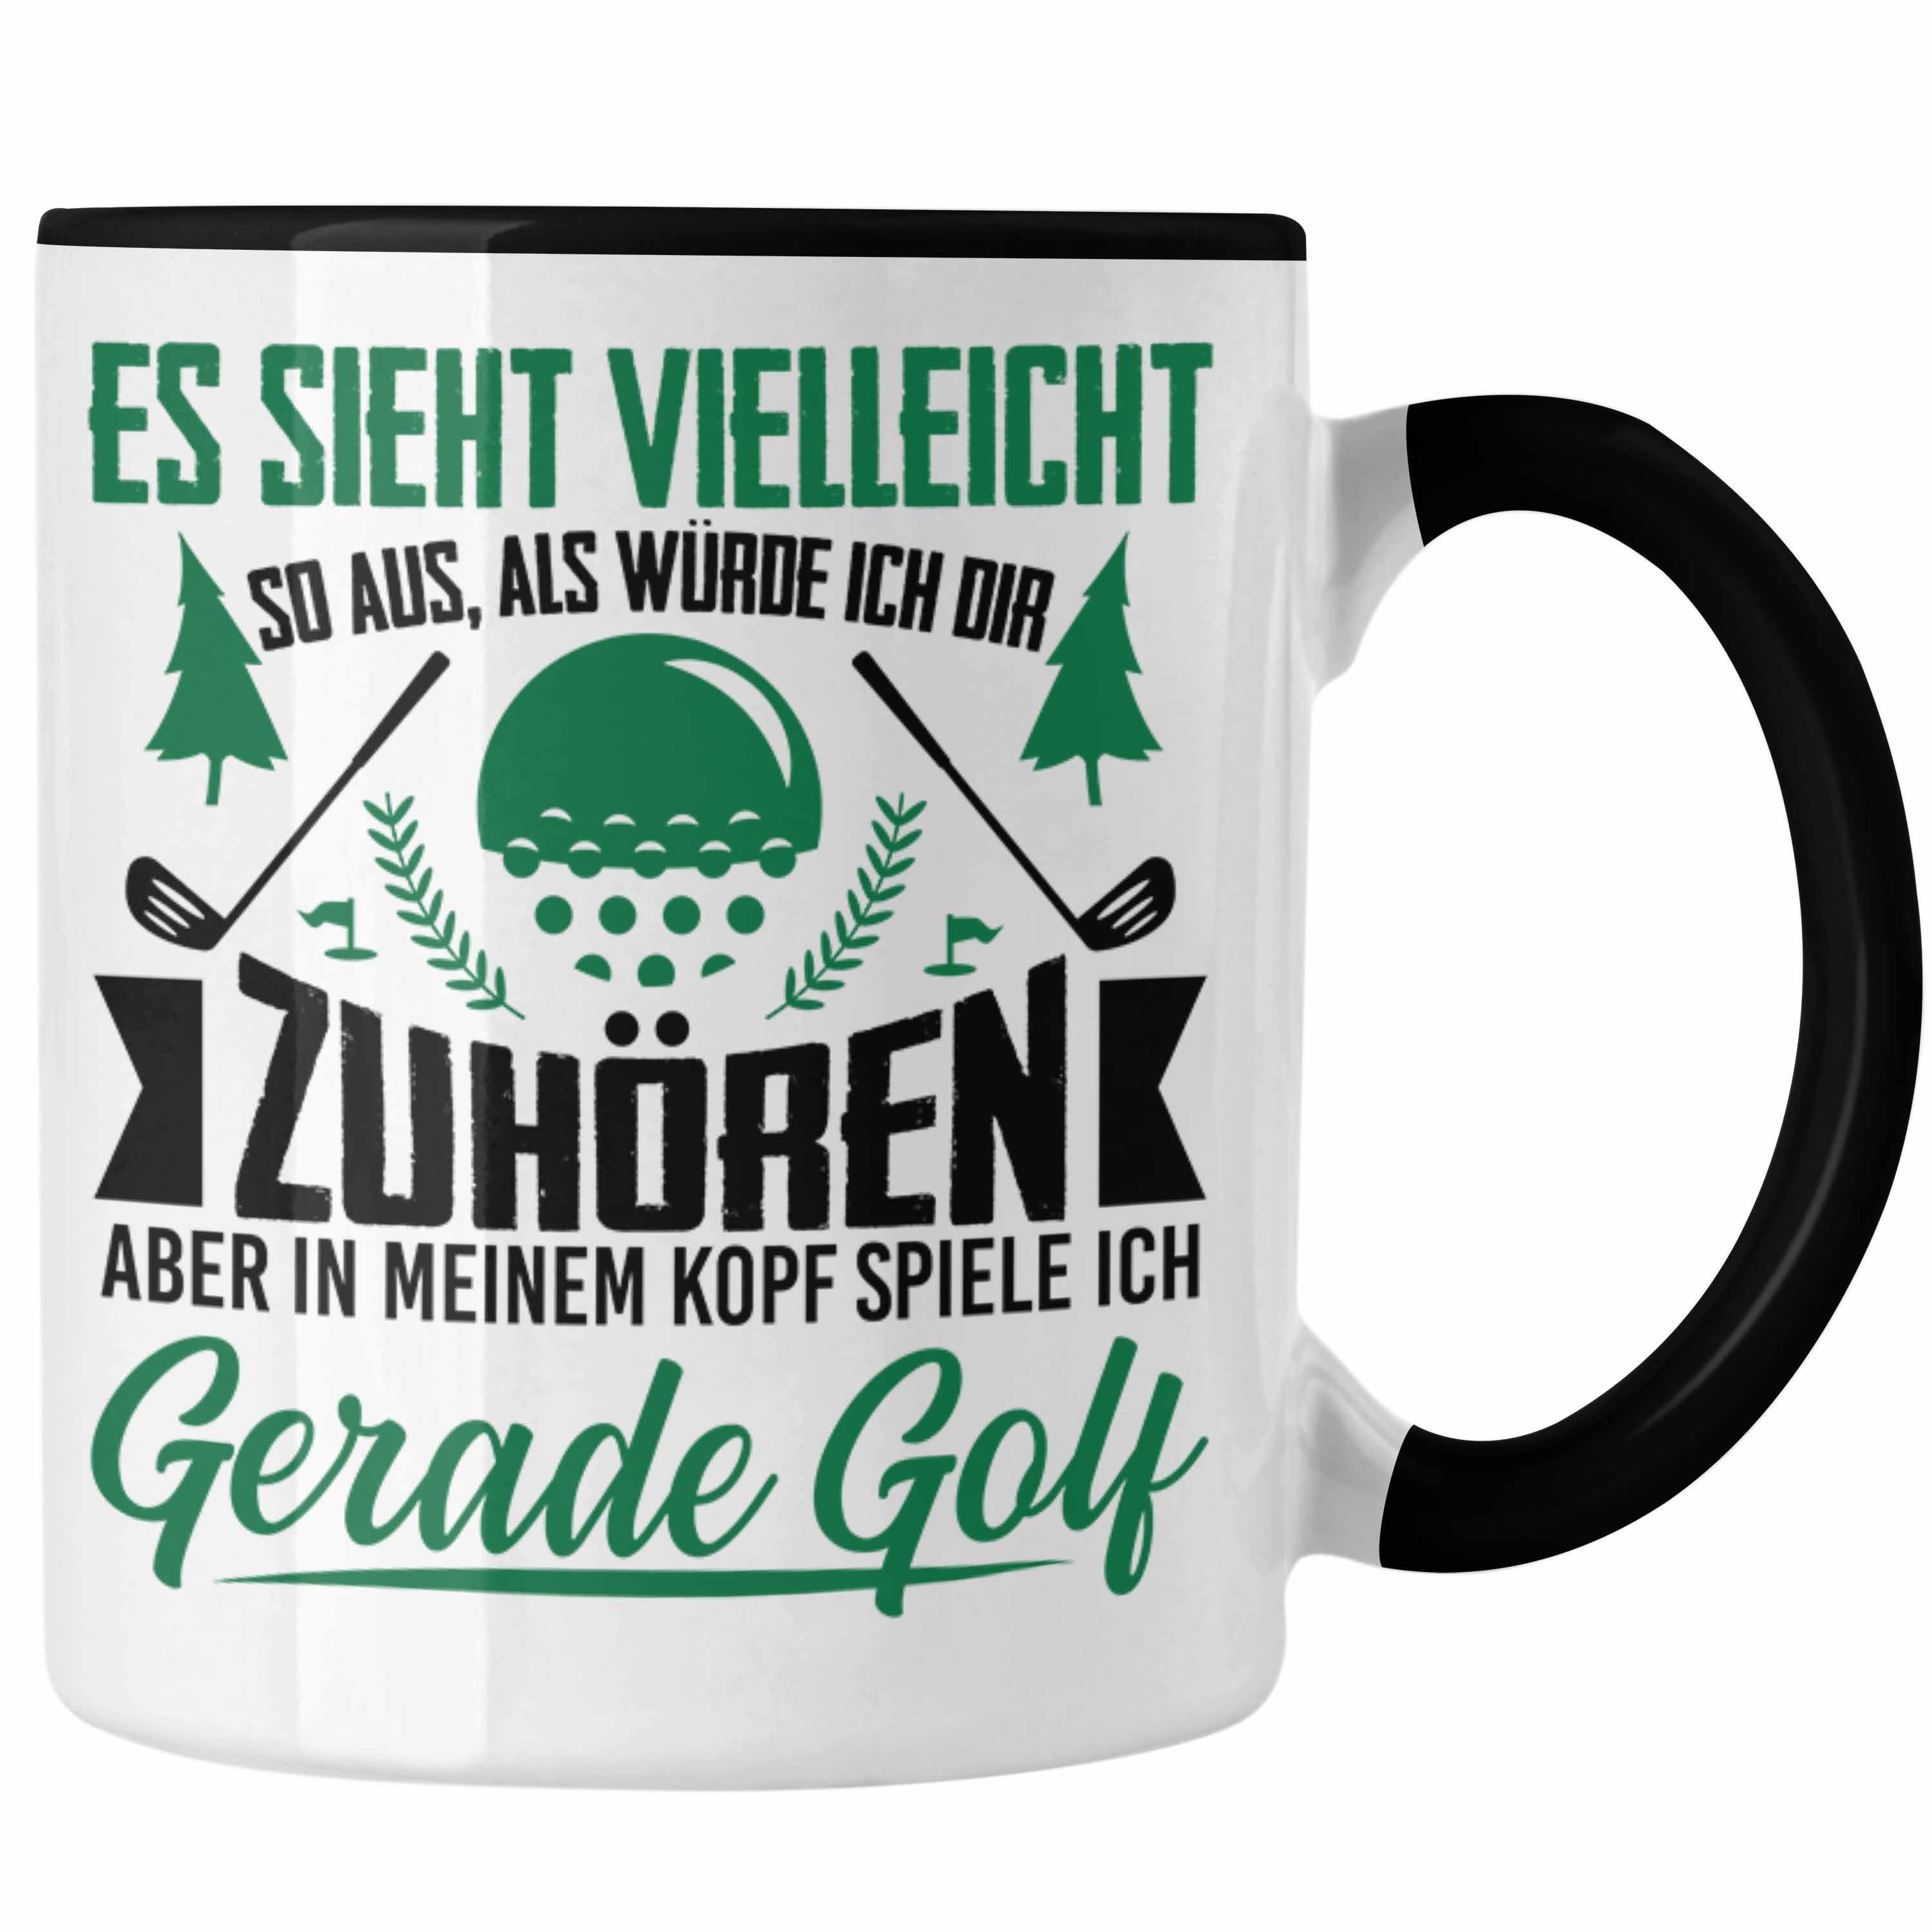 Trendation Tasse Trendation - Golfer Geschenk Golf Tasse mit Spruch - Kaffeetasse für Golfer Geschenkidee Schwarz